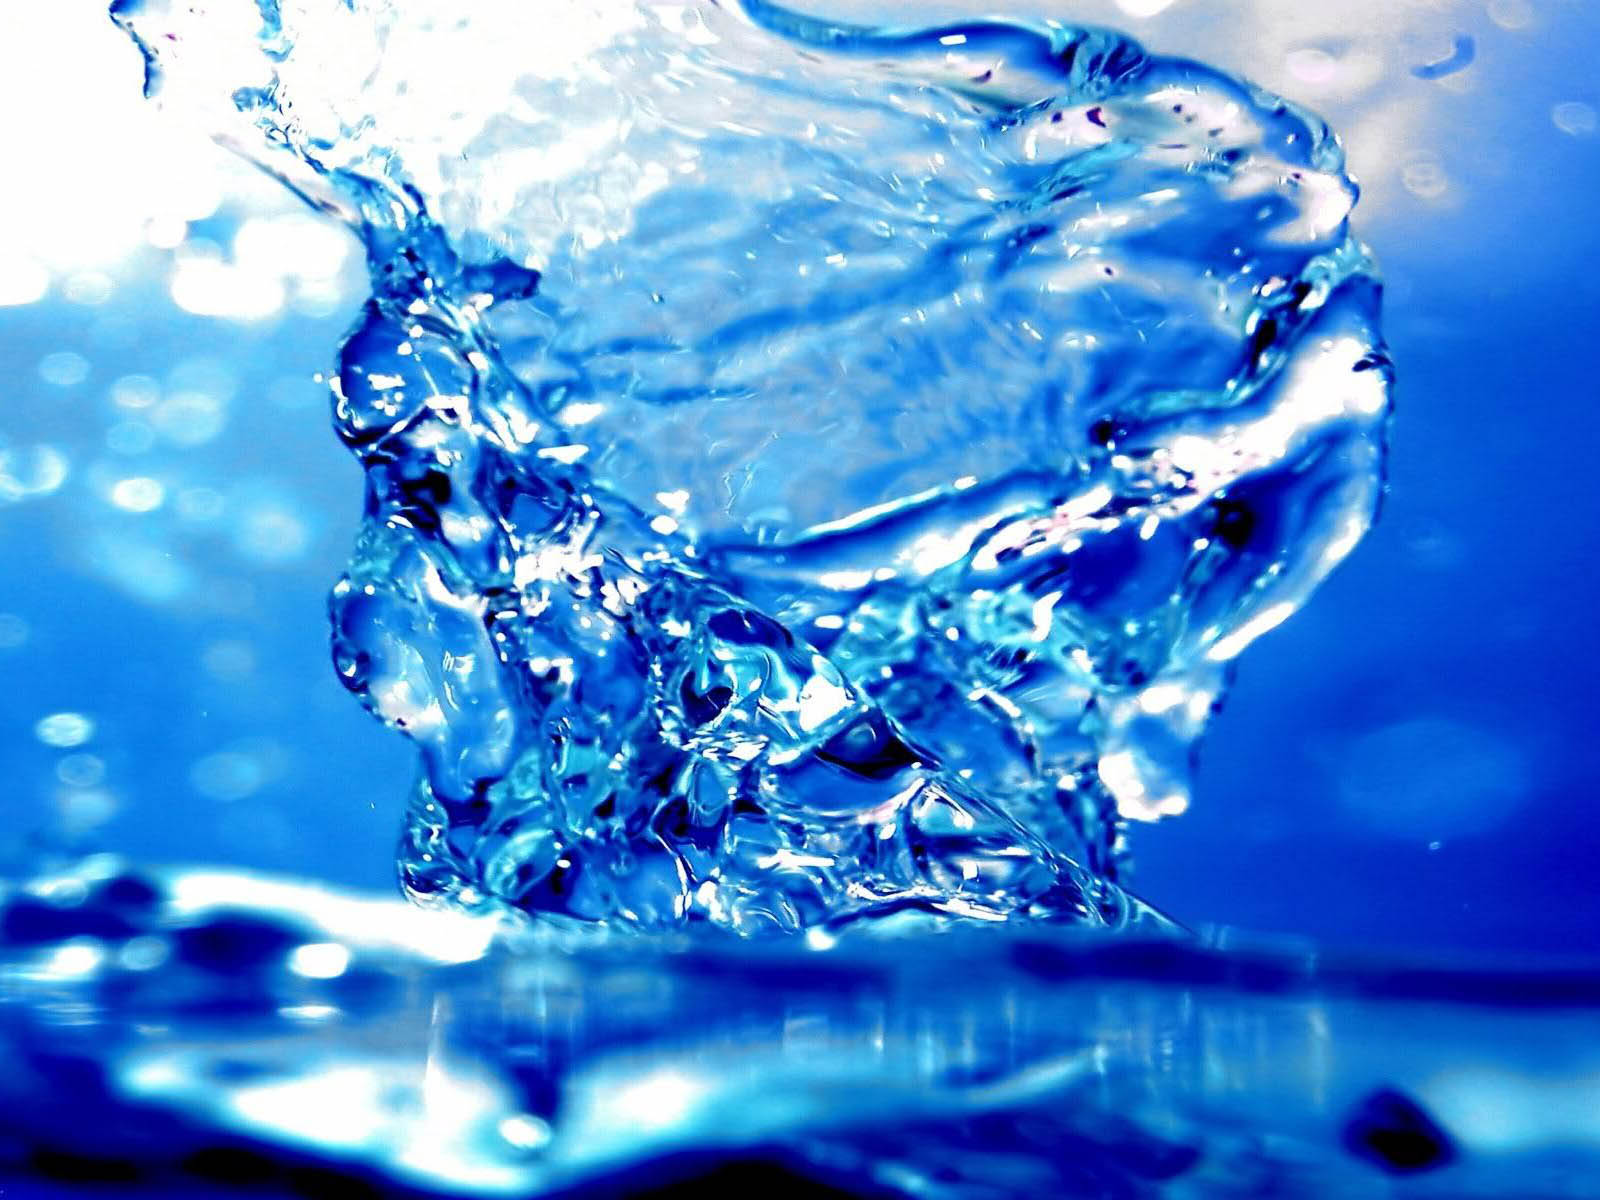 sfondo del desktop di acqua,acqua,risorse idriche,liquido,blu,bevendo acqua